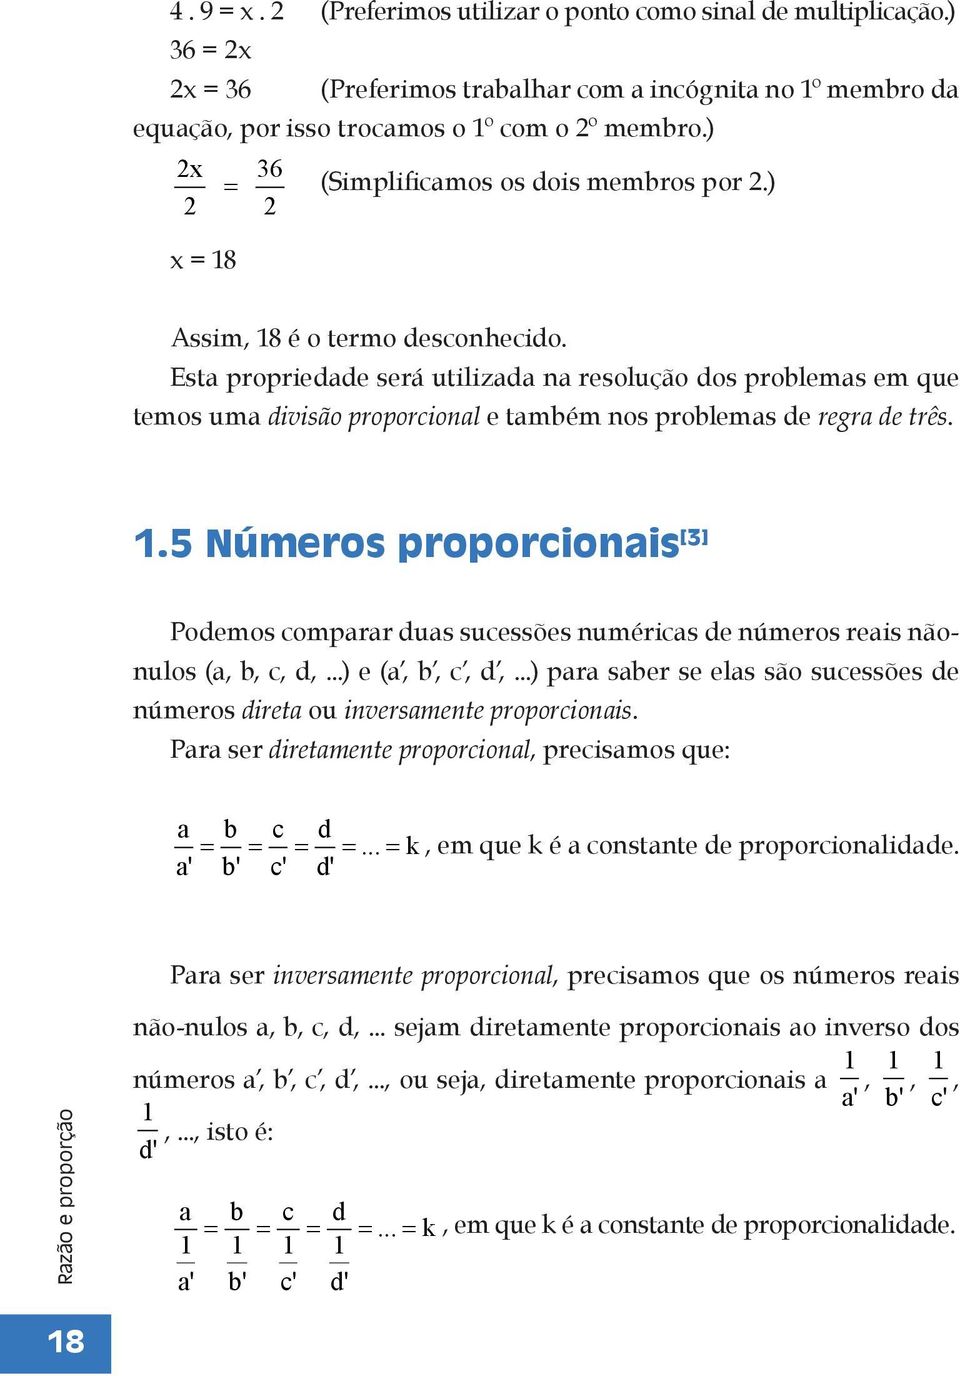 Esta propriedade será utilizada na resolução dos problemas em que temos uma divisão proporcional e também nos problemas de regra de três. 1.